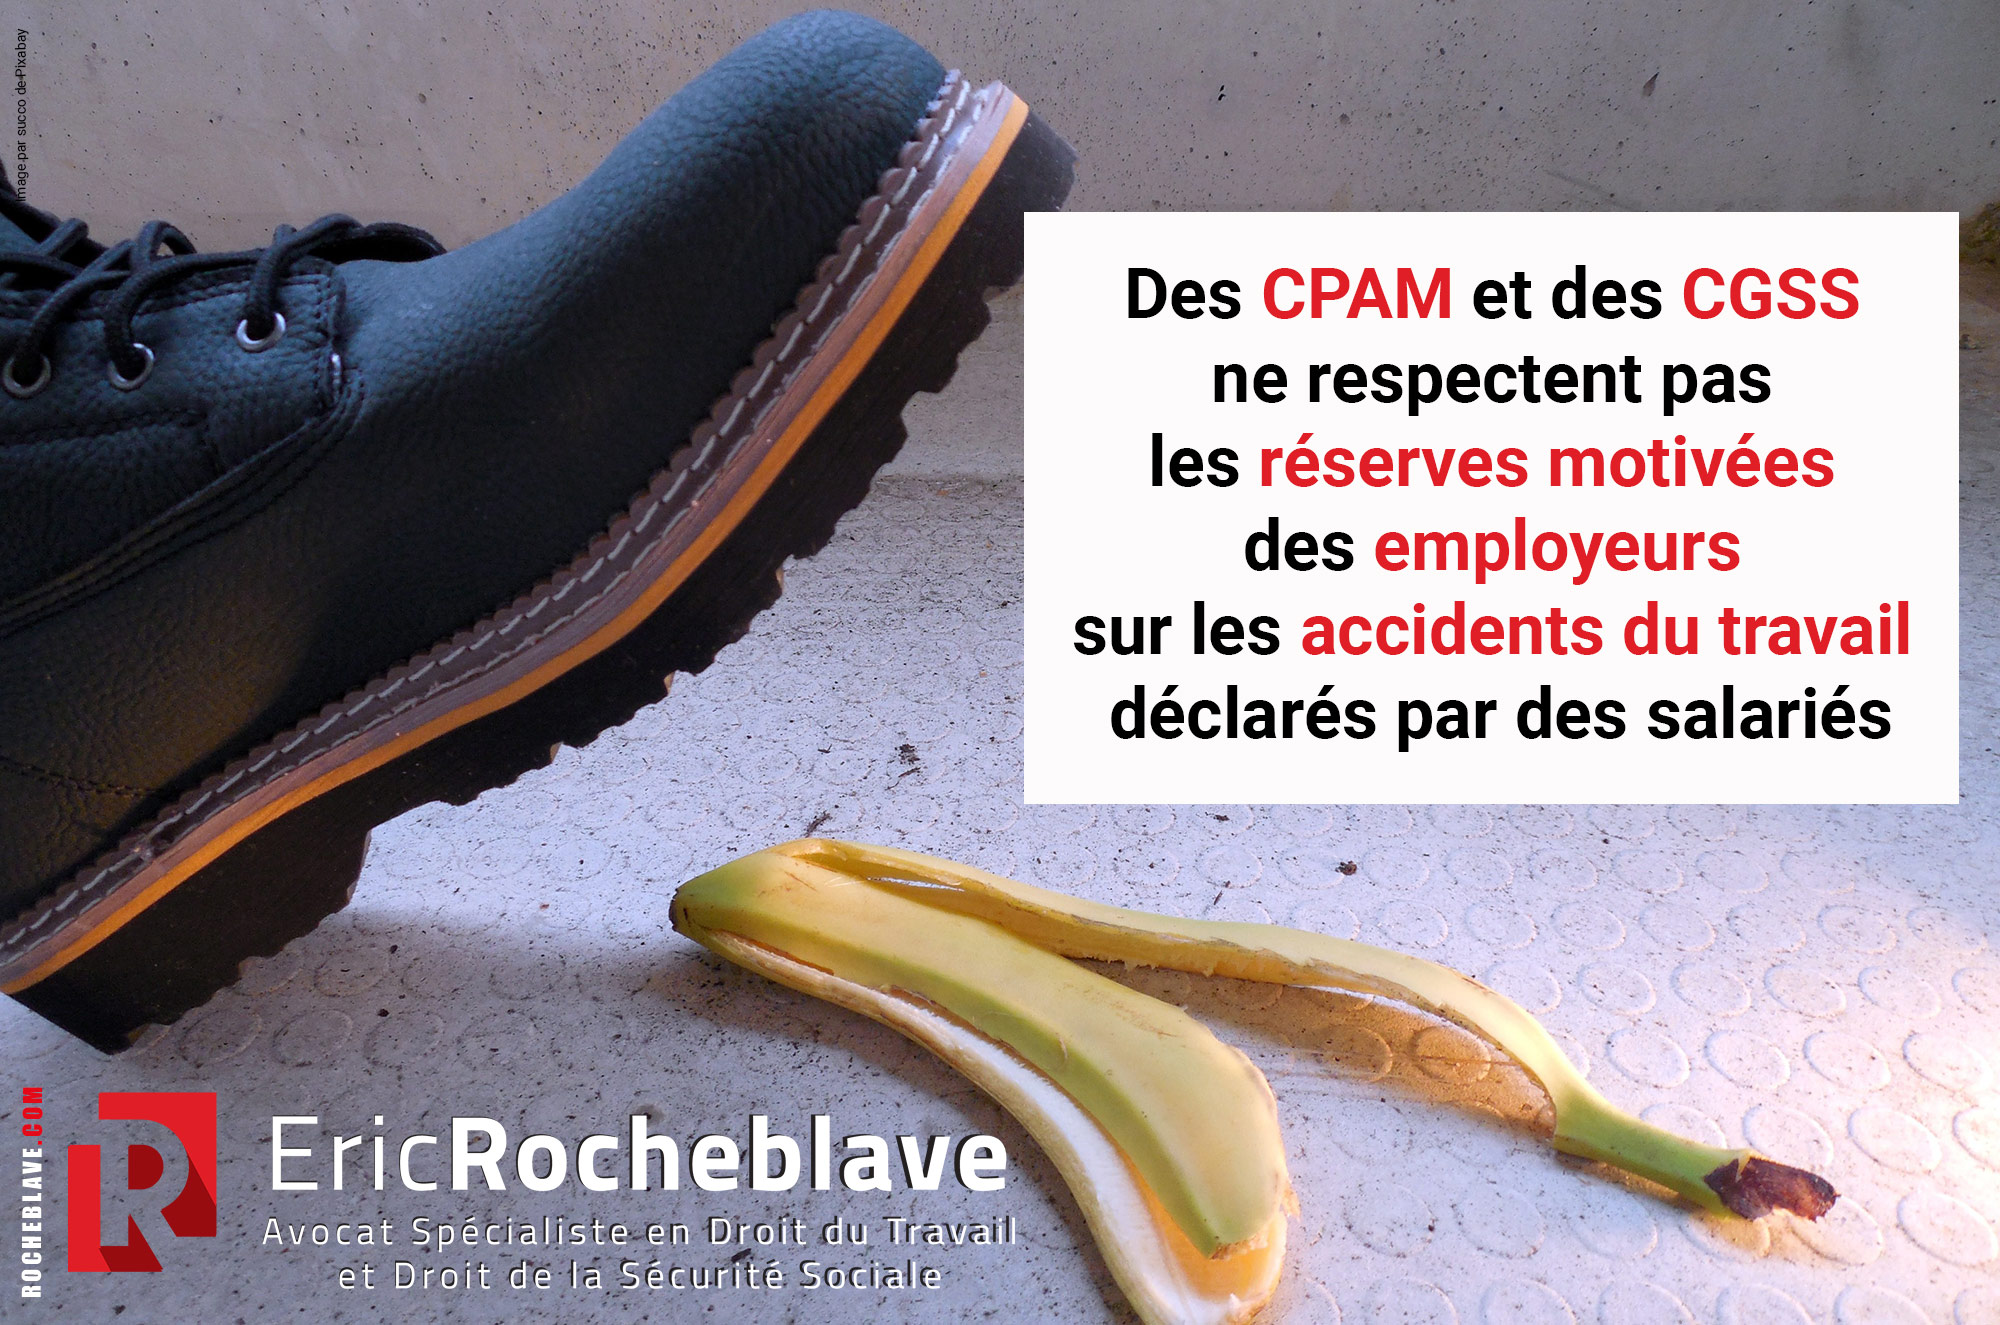 Des CPAM et des CGSS ne respectent pas les réserves motivées des employeurs sur les accidents du travail déclarés par des salariés